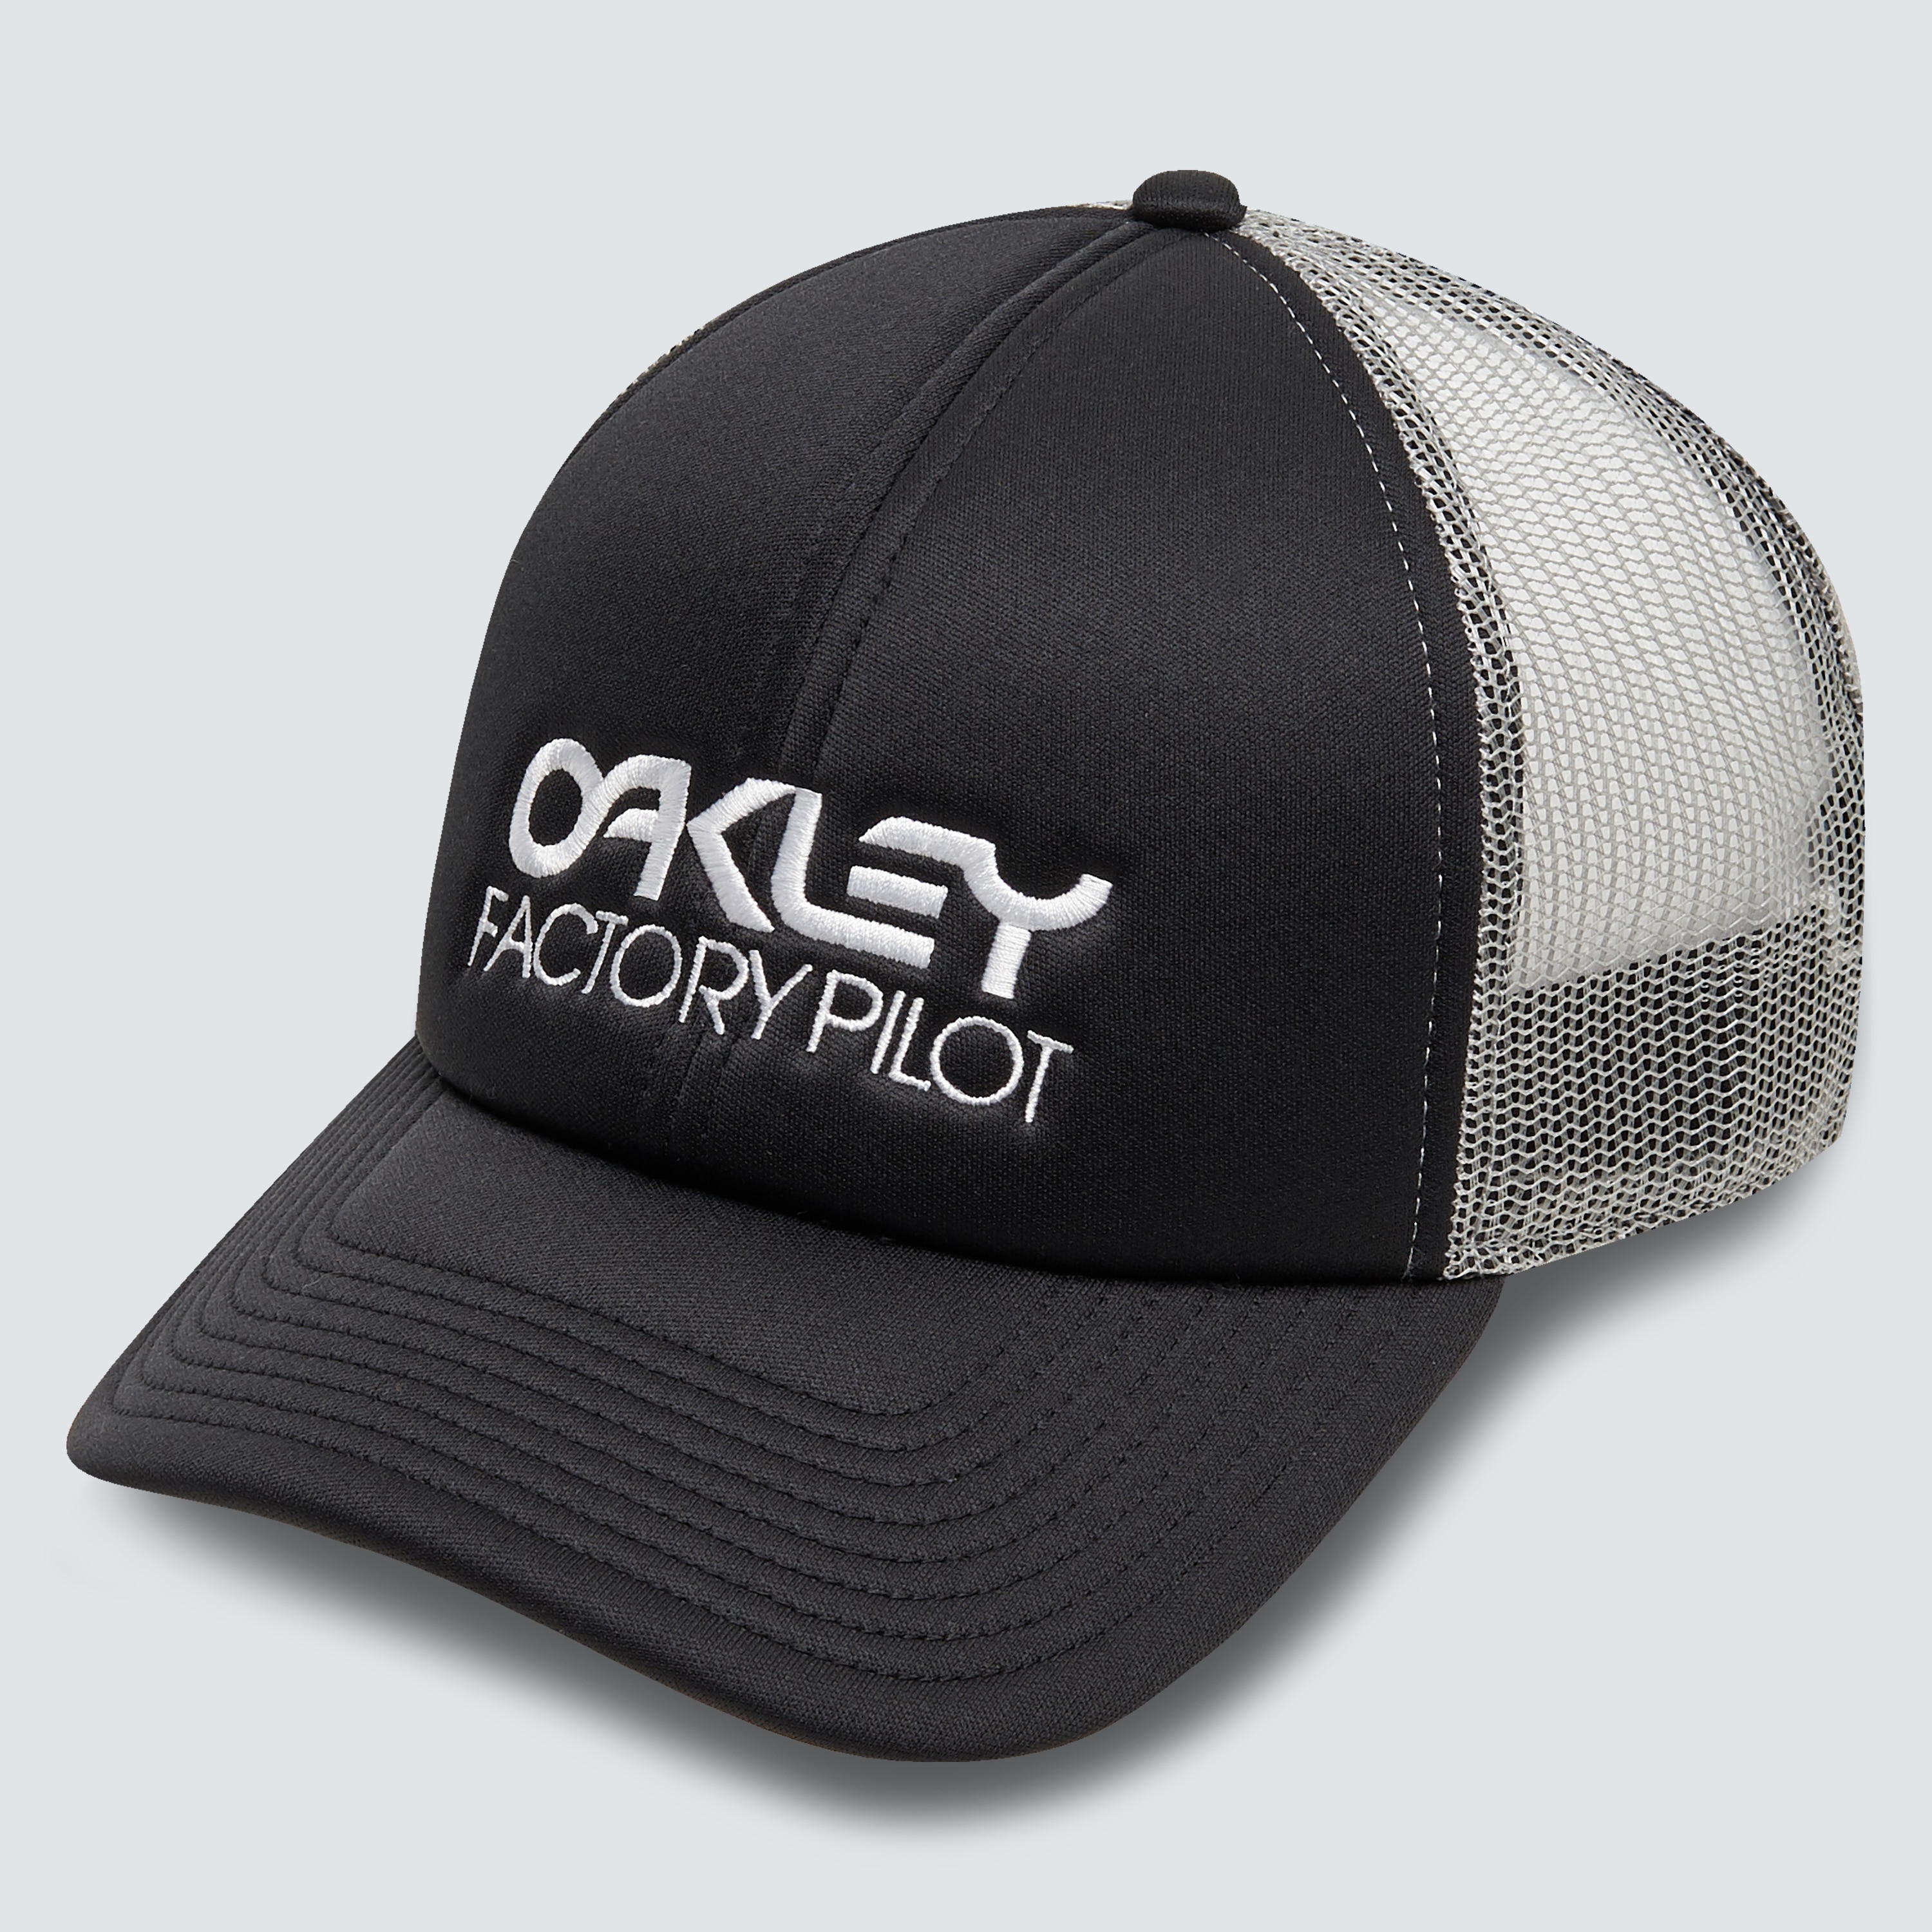 Oakley Factory Pilot Trucker Hat In Black